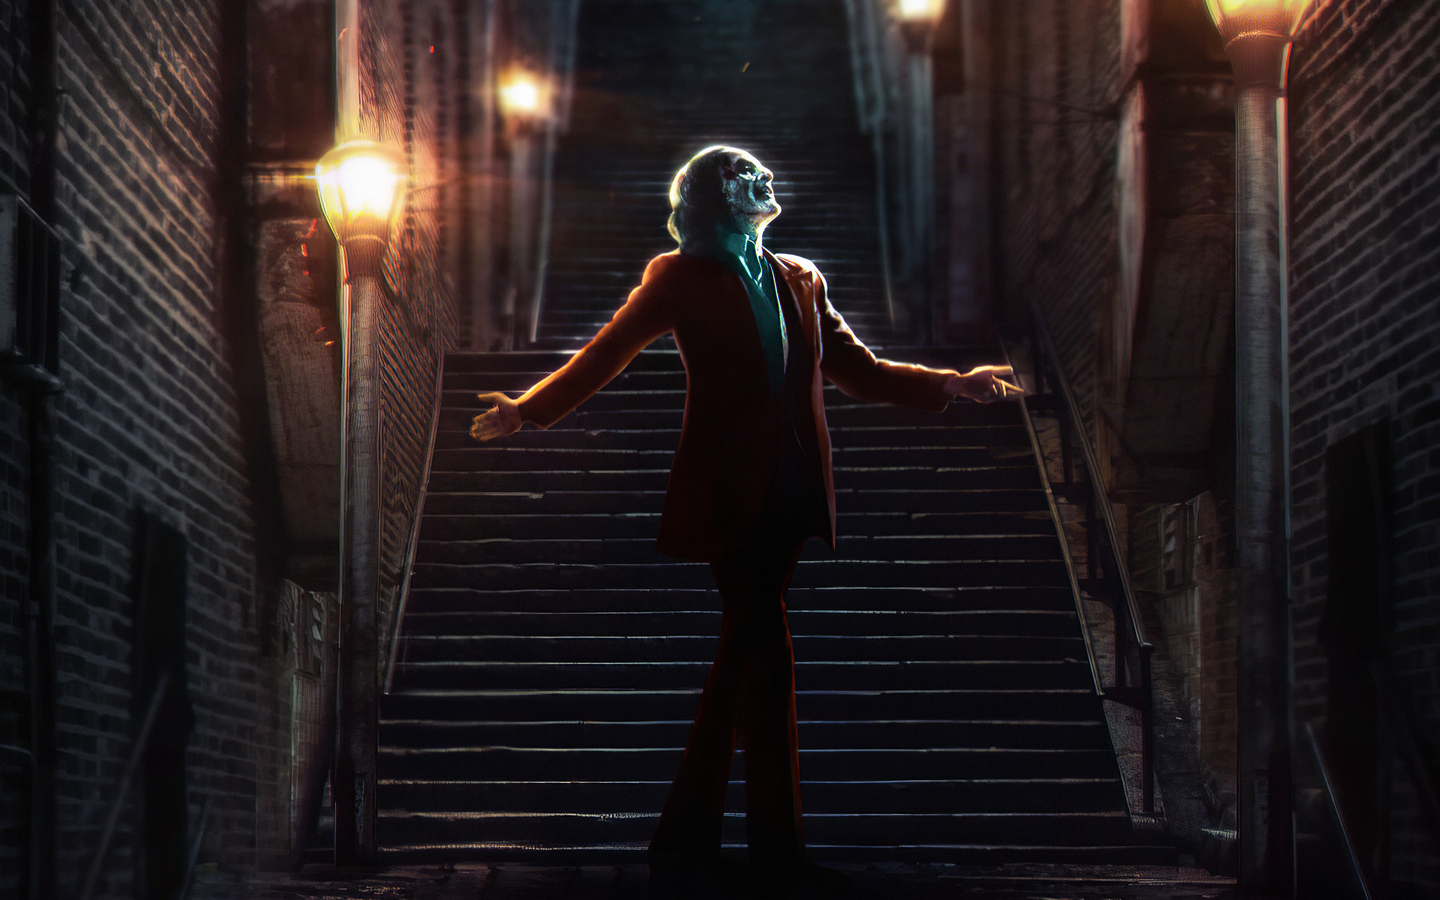 Joker 2019 4k In 1440x900 Resolution. joker-2019-4k-8s.jpg. 